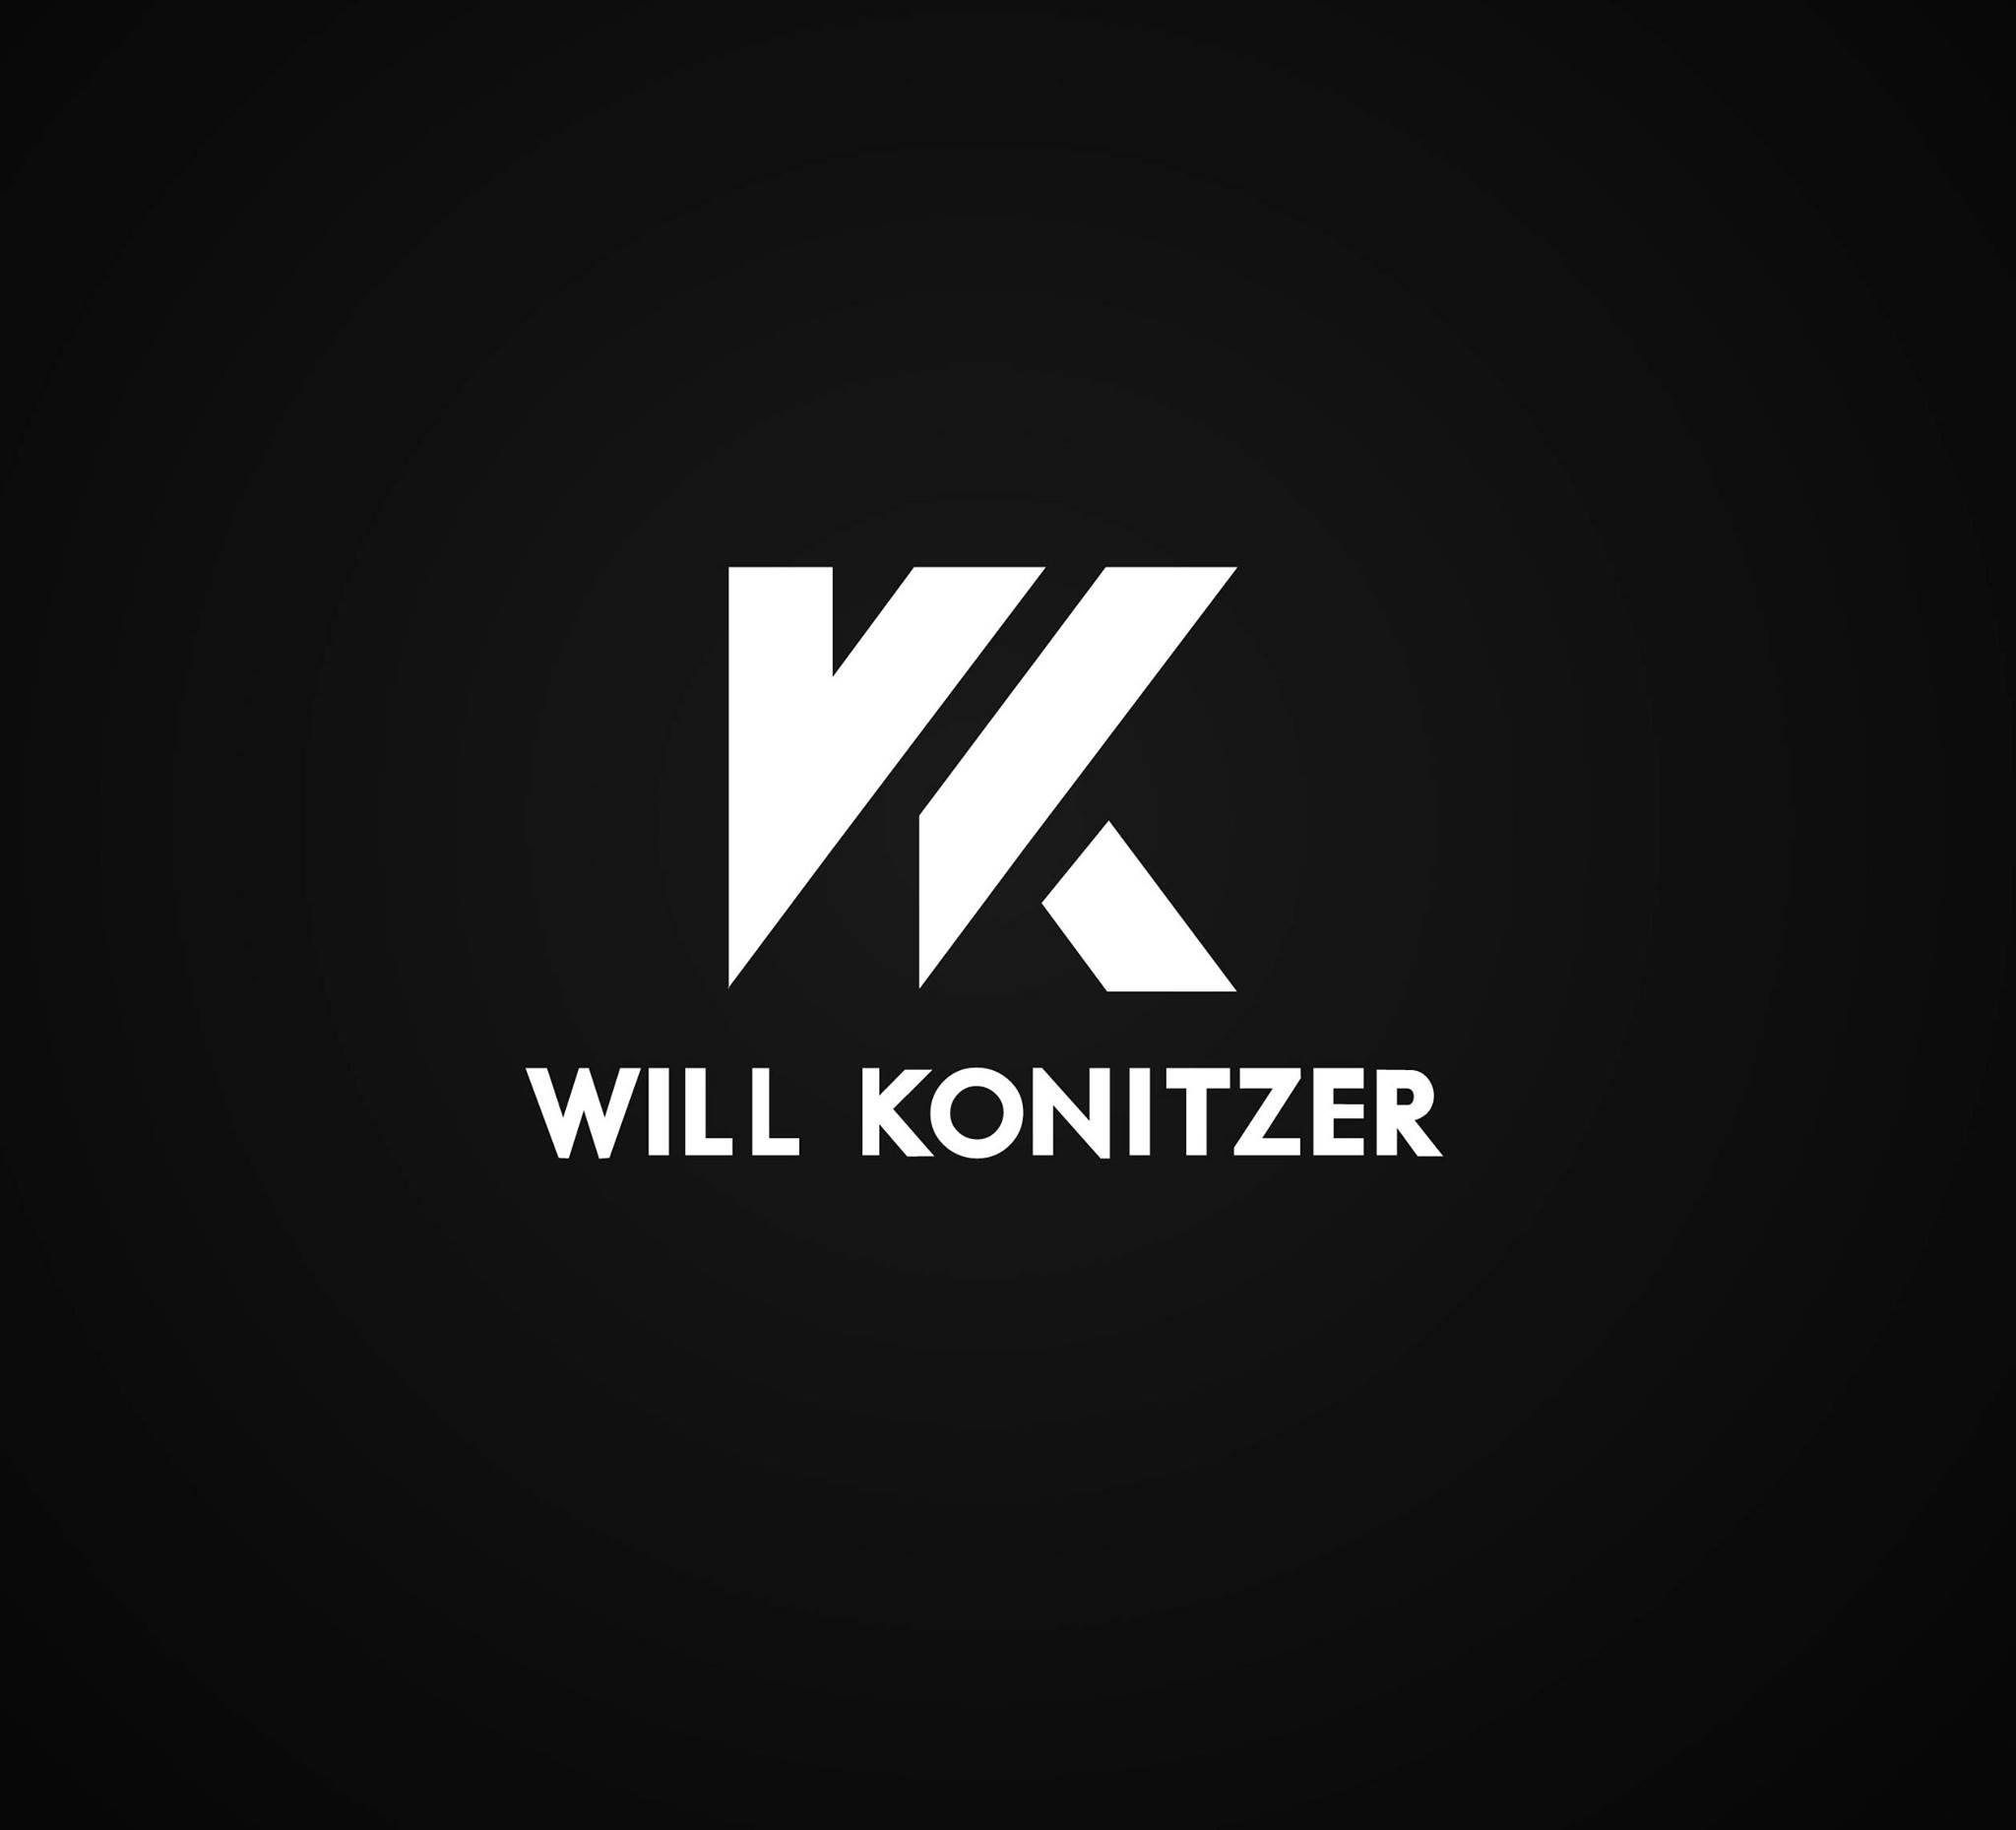 Will Konitzer